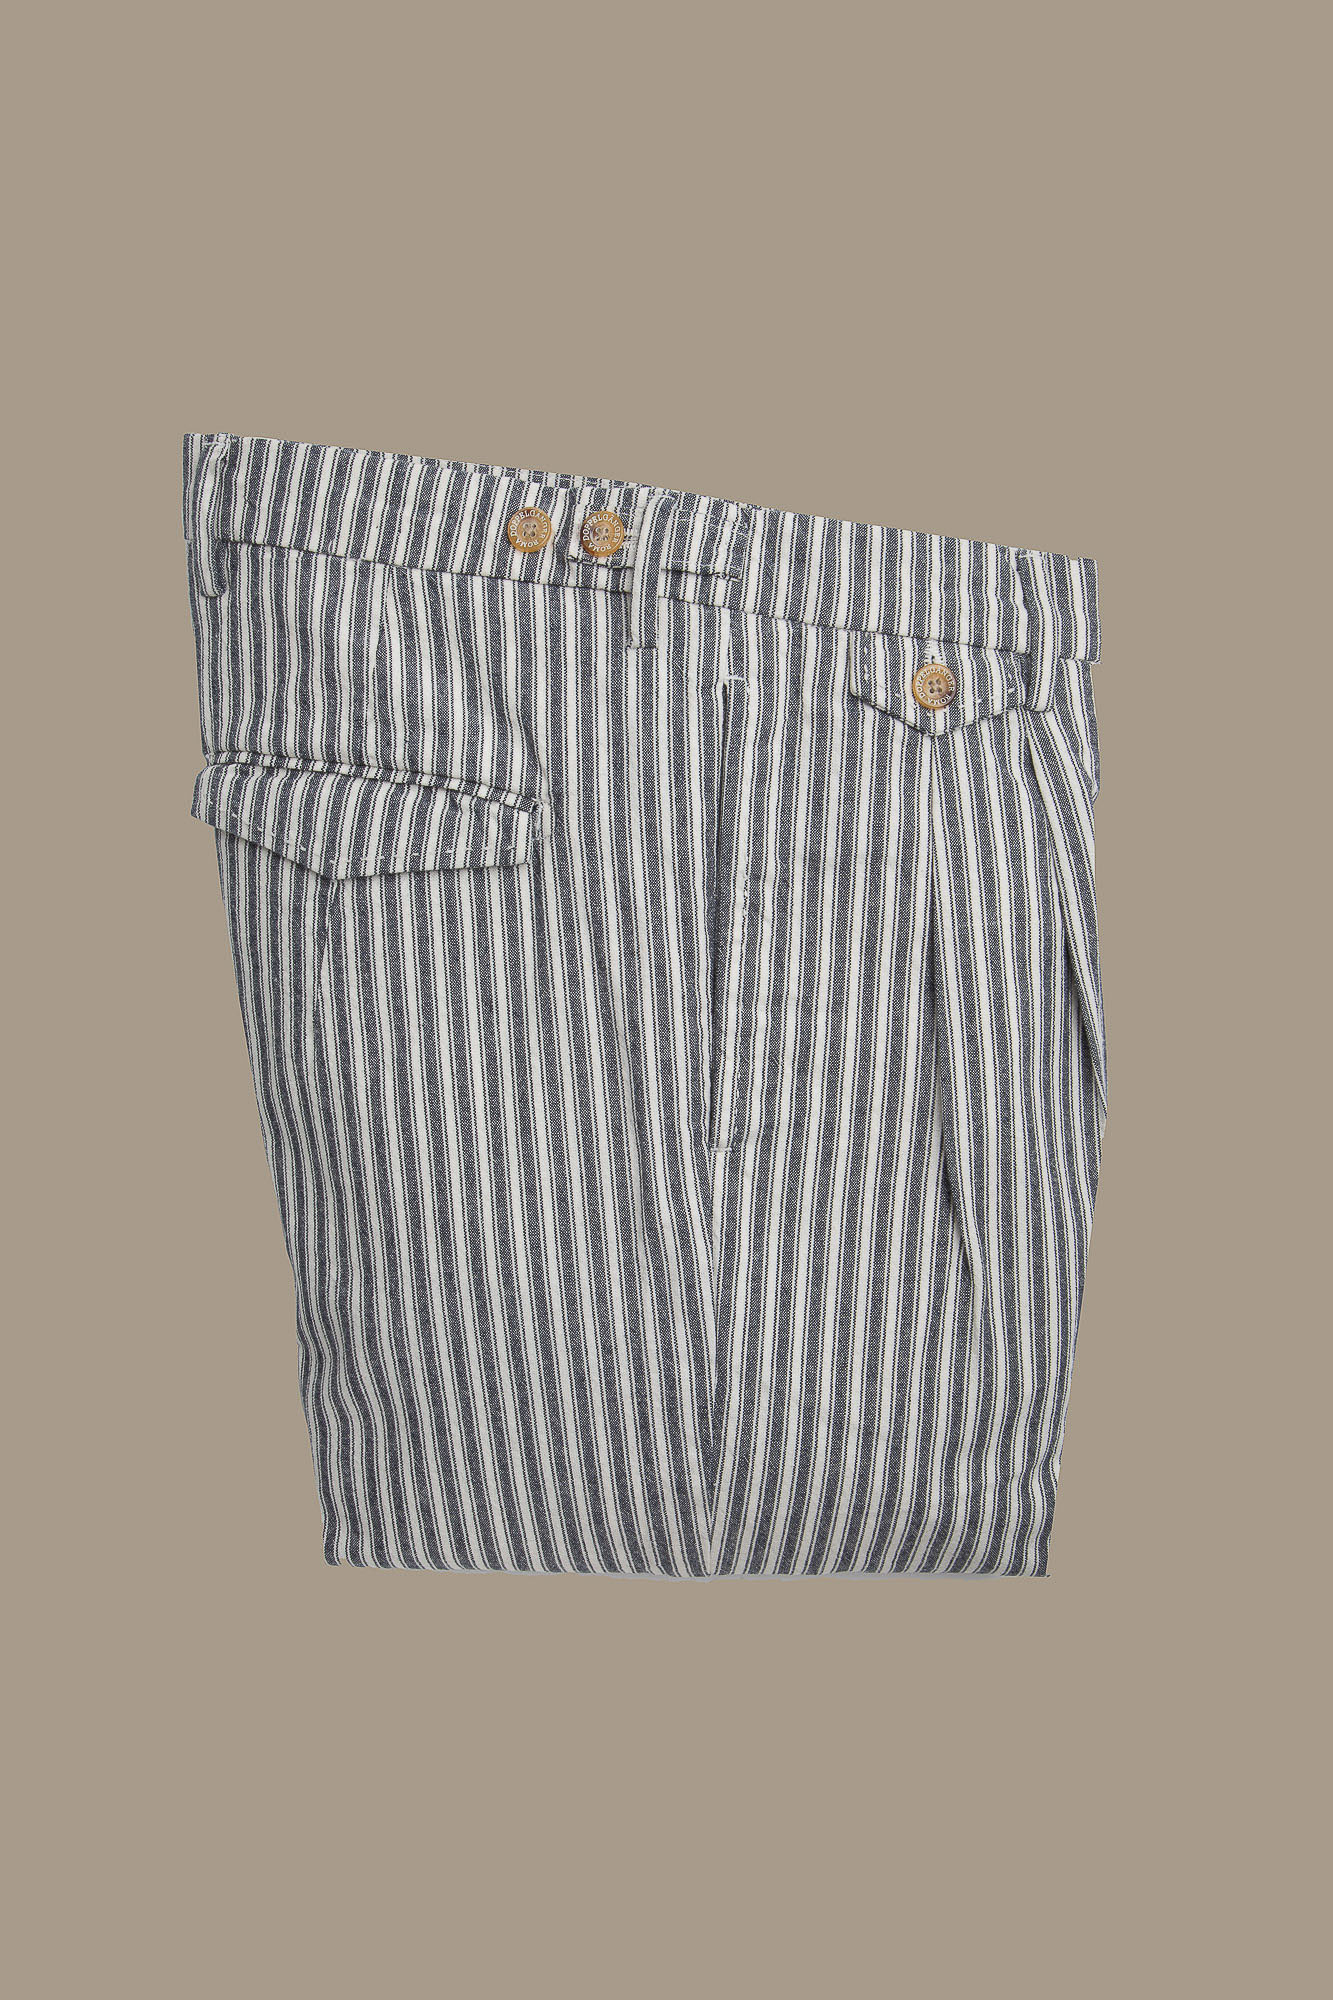 Pantalone uomo chino bicolore con doppia pinces singola e risvolto misto lino e cotone image number null